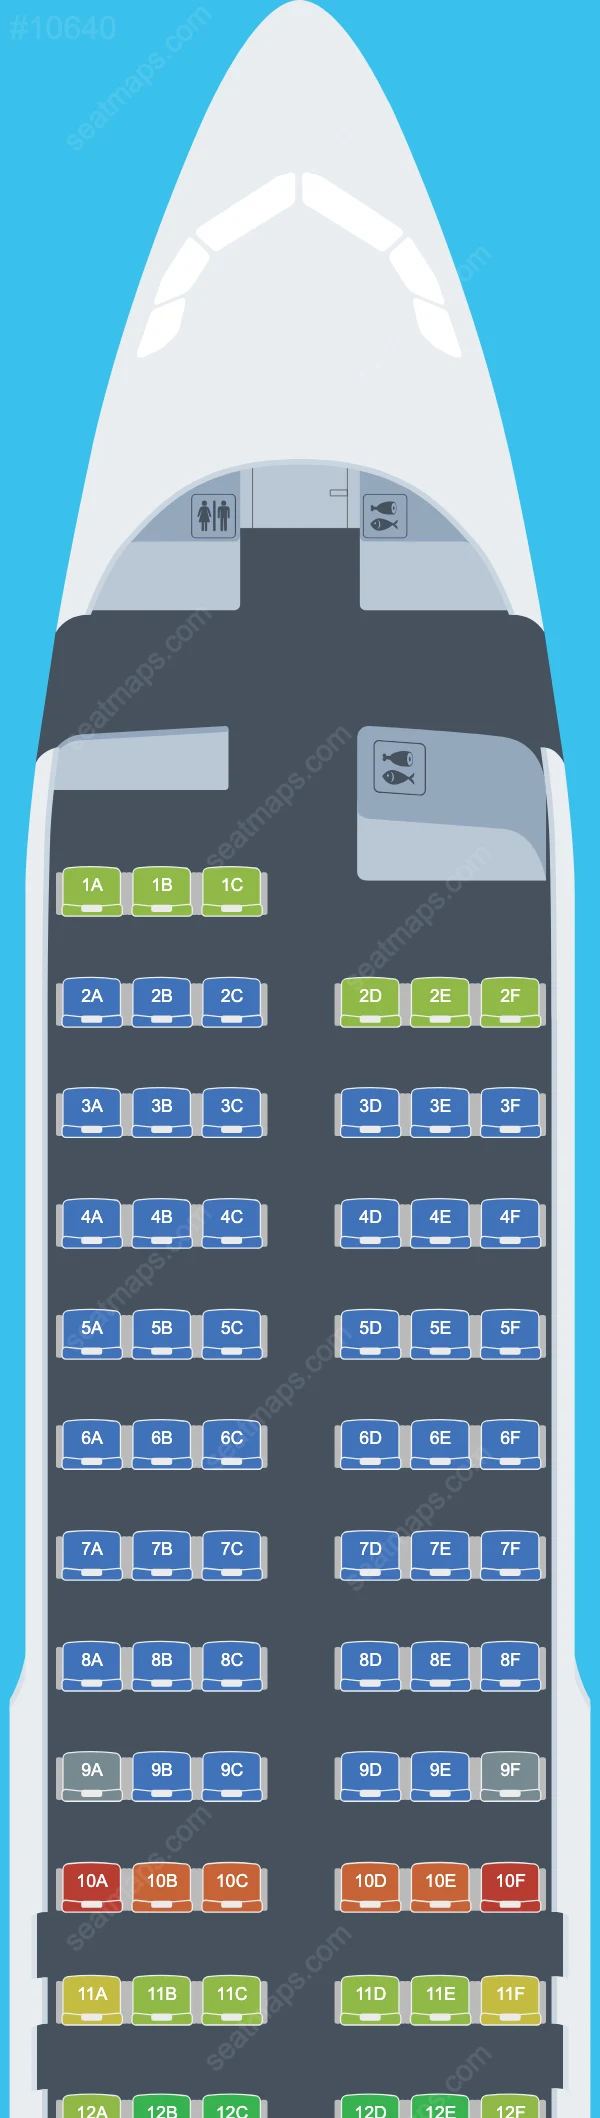 ITA Airways Airbus A320 Seat Maps A320-200 V.2